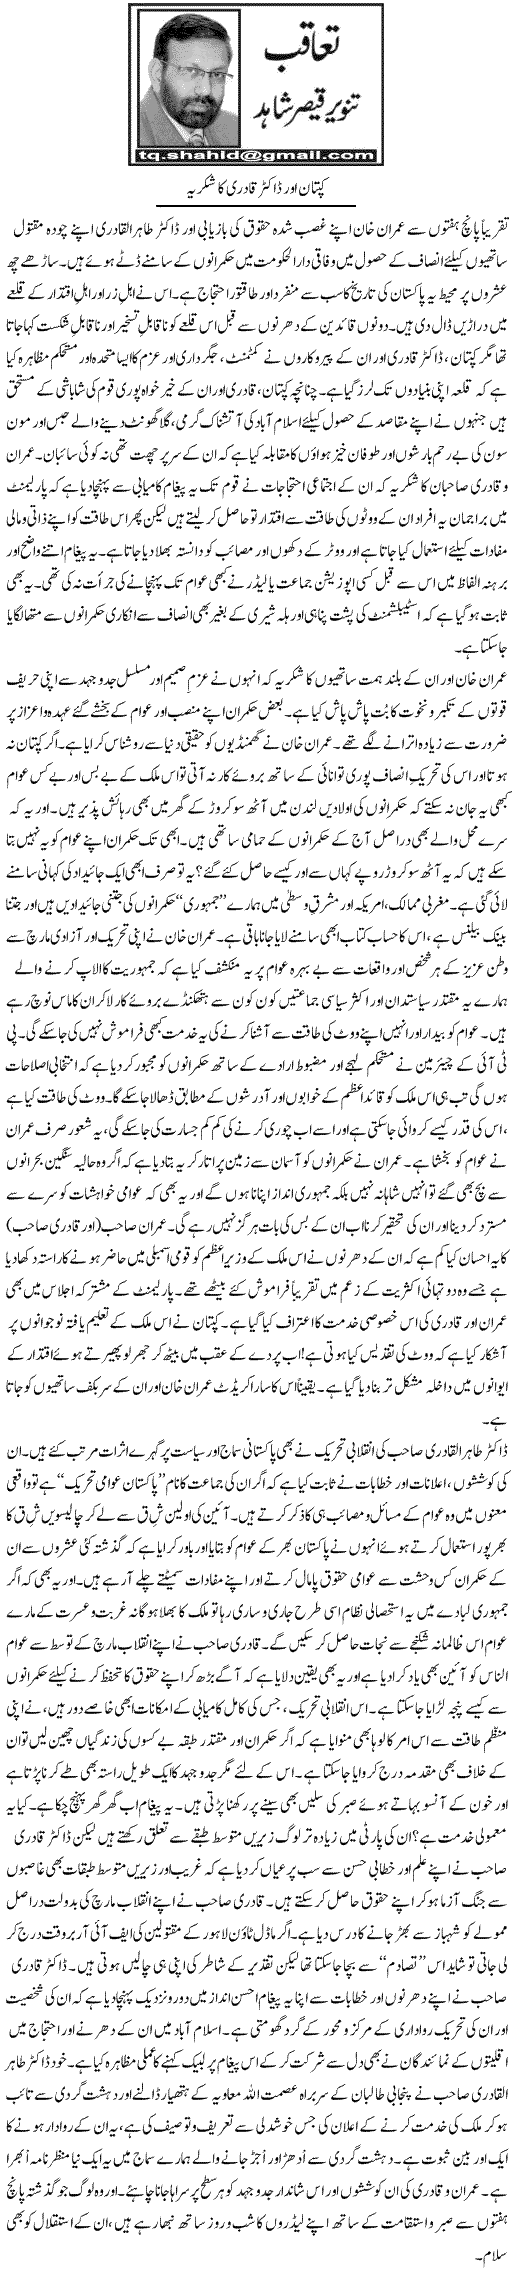 تحریک منہاج القرآن Minhaj-ul-Quran  Print Media Coverage پرنٹ میڈیا کوریج Daily Express - Tanvir Qaiser Shahid